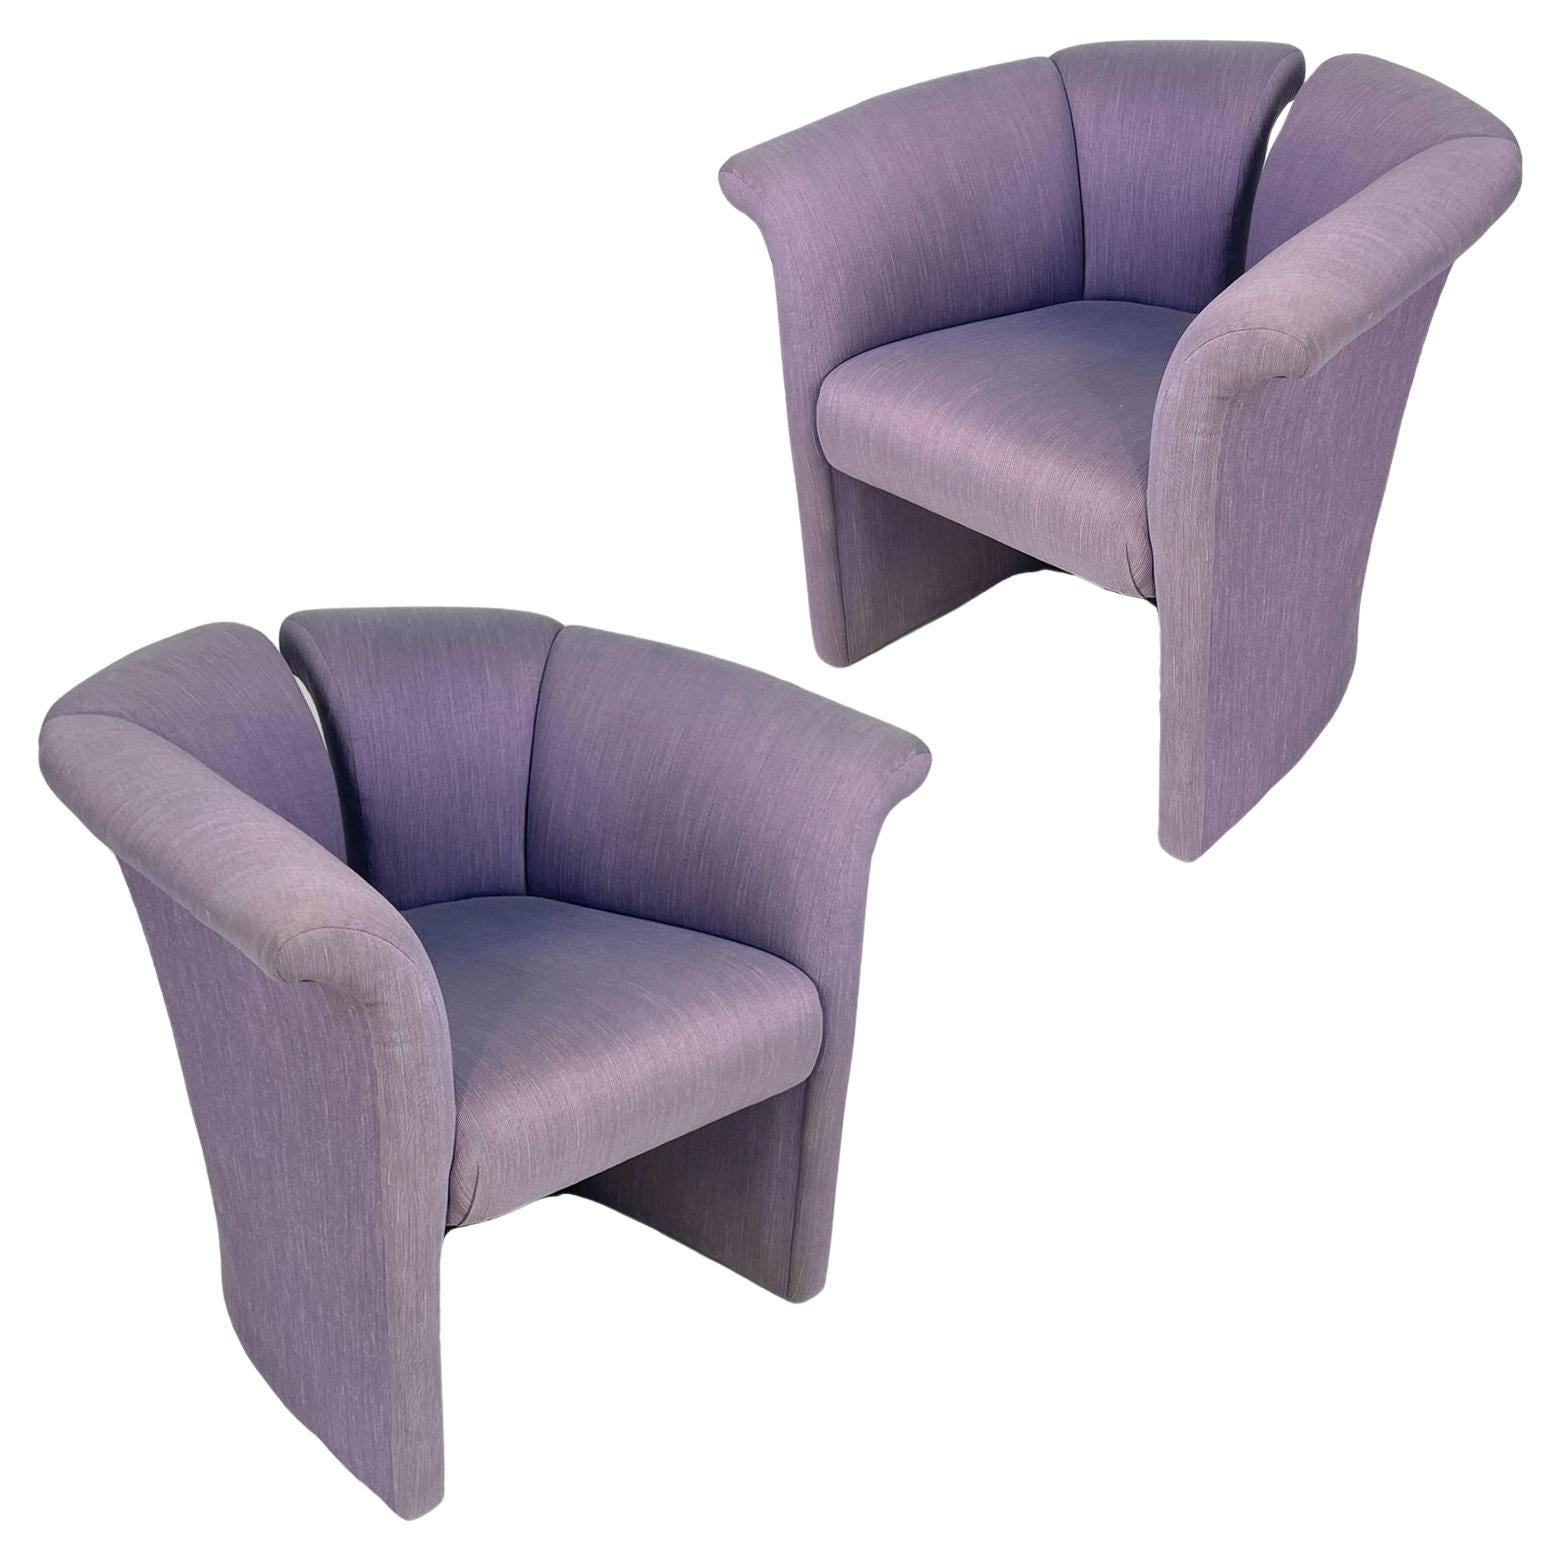 Cette paire unique de fauteuils d'appoint postmodernes très stylisés est recouverte d'une tapisserie durable aux tons riches. Les chaises présentent de grandes lignes avec un dossier en éventail et des accoudoirs incurvés pour un confort supérieur.